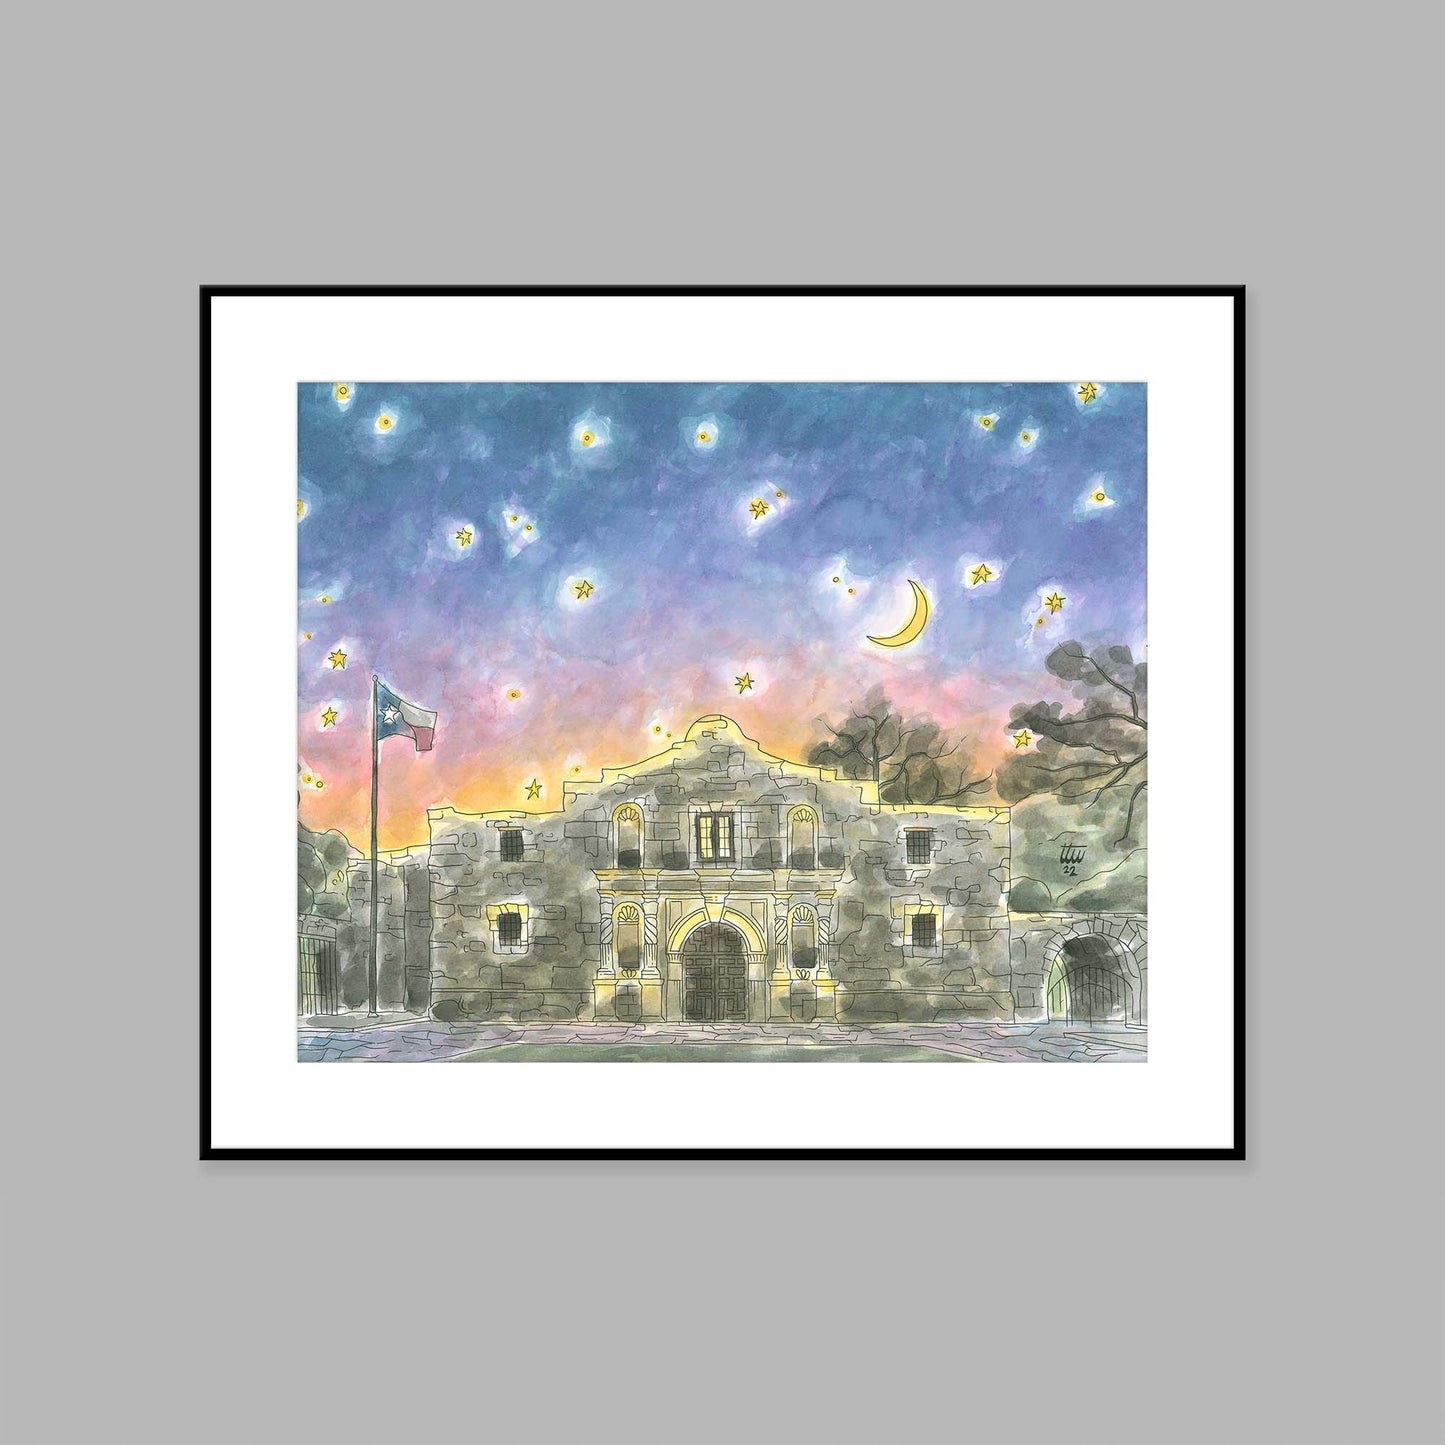 The Alamo at Sunset - 20x16